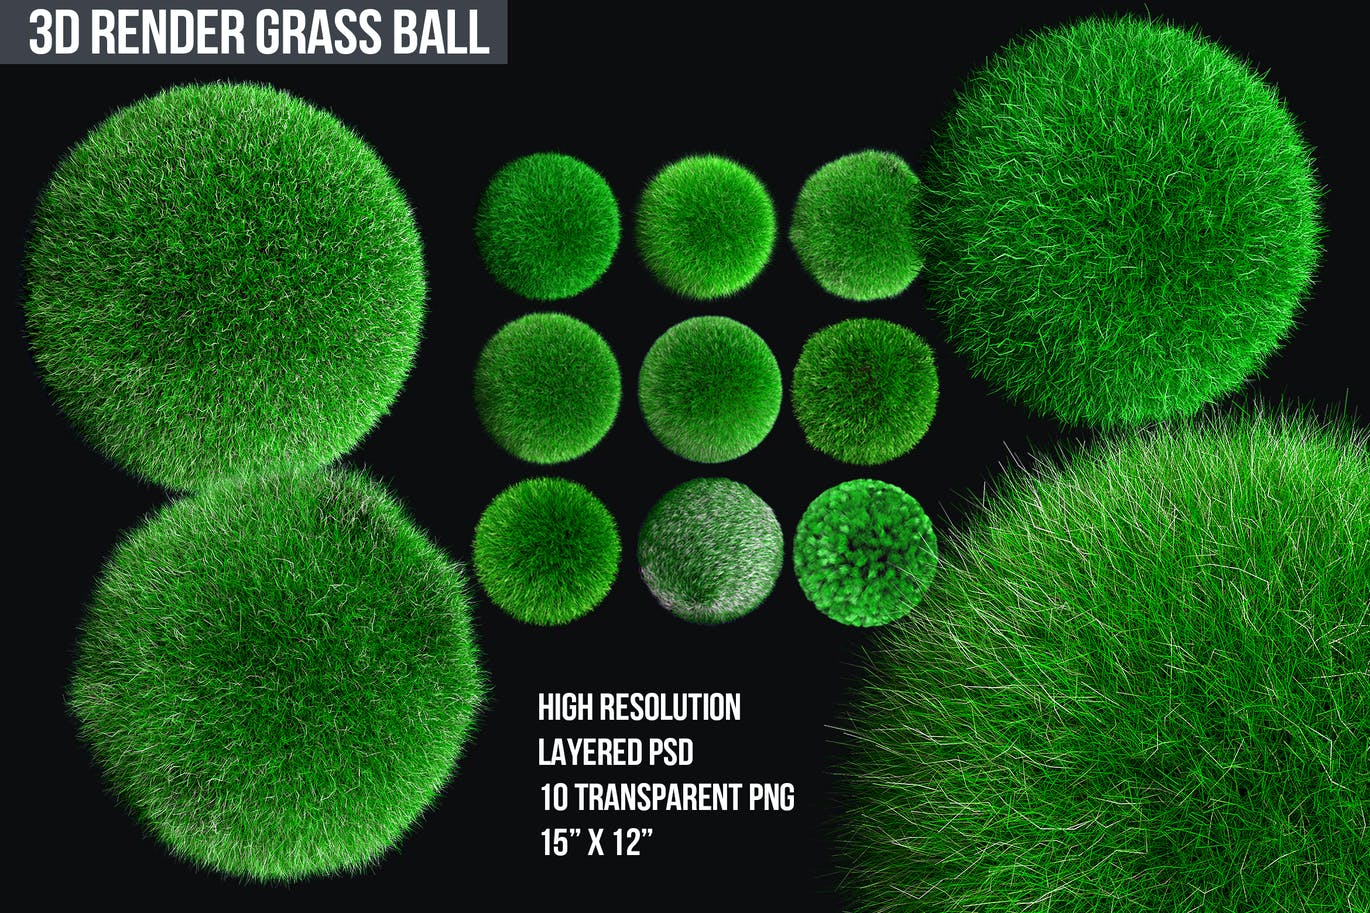 少见稀有的3D立体草球背景底纹纹理集合